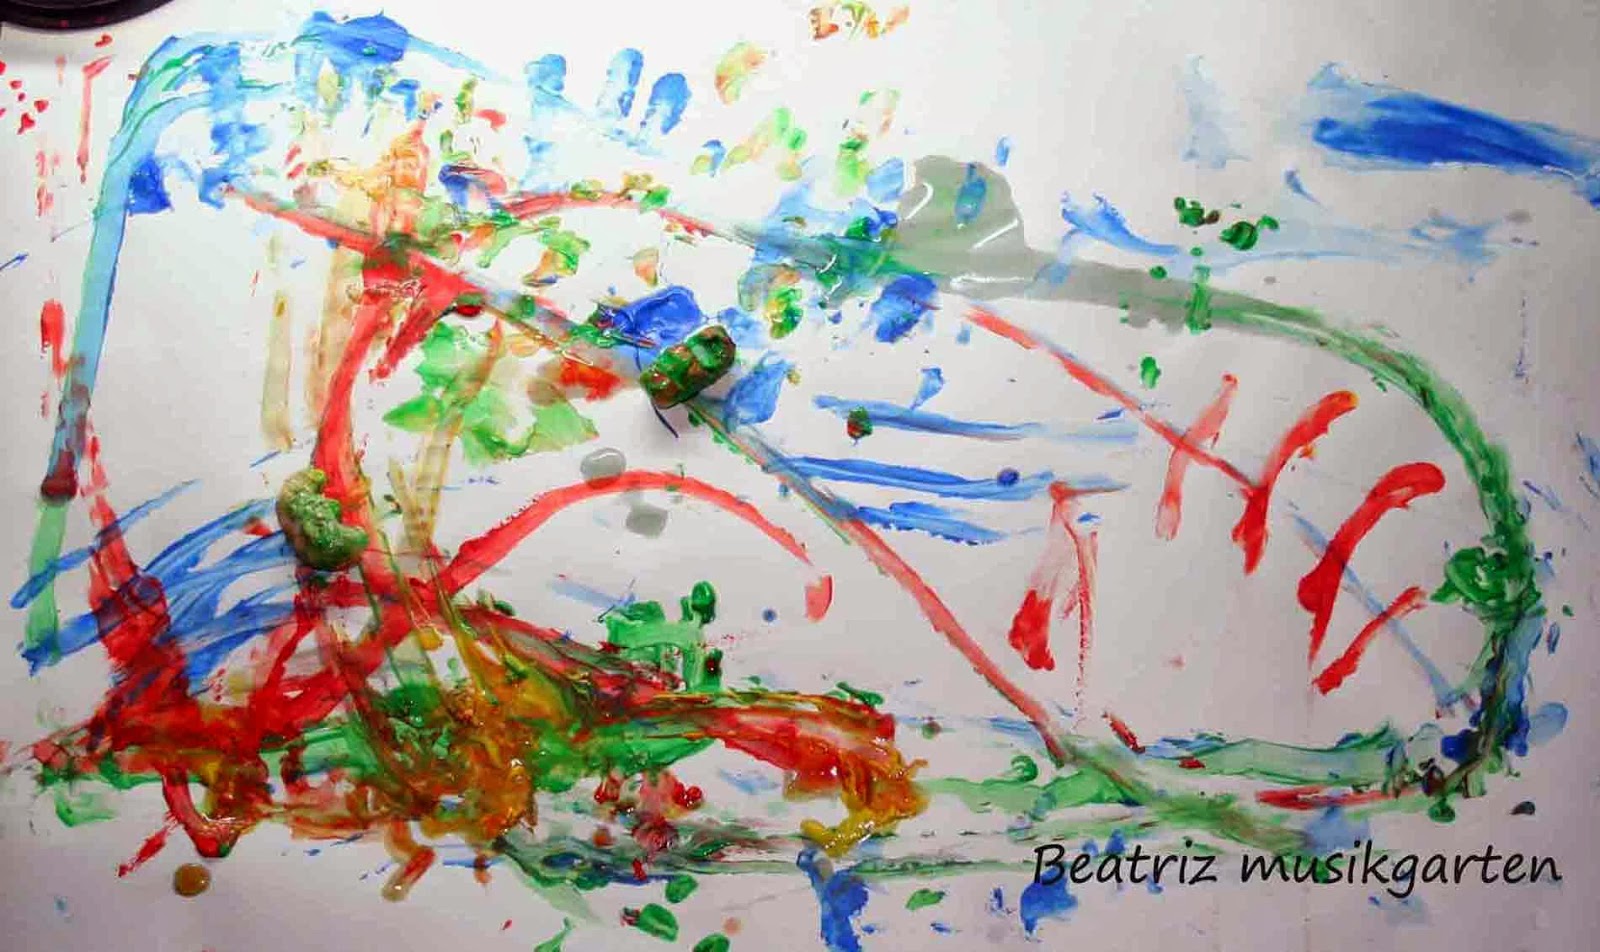 Berri Velo gorra Beatriz musikgarten: Pintura de acción o "action painting": El lienzo como  campo de juego